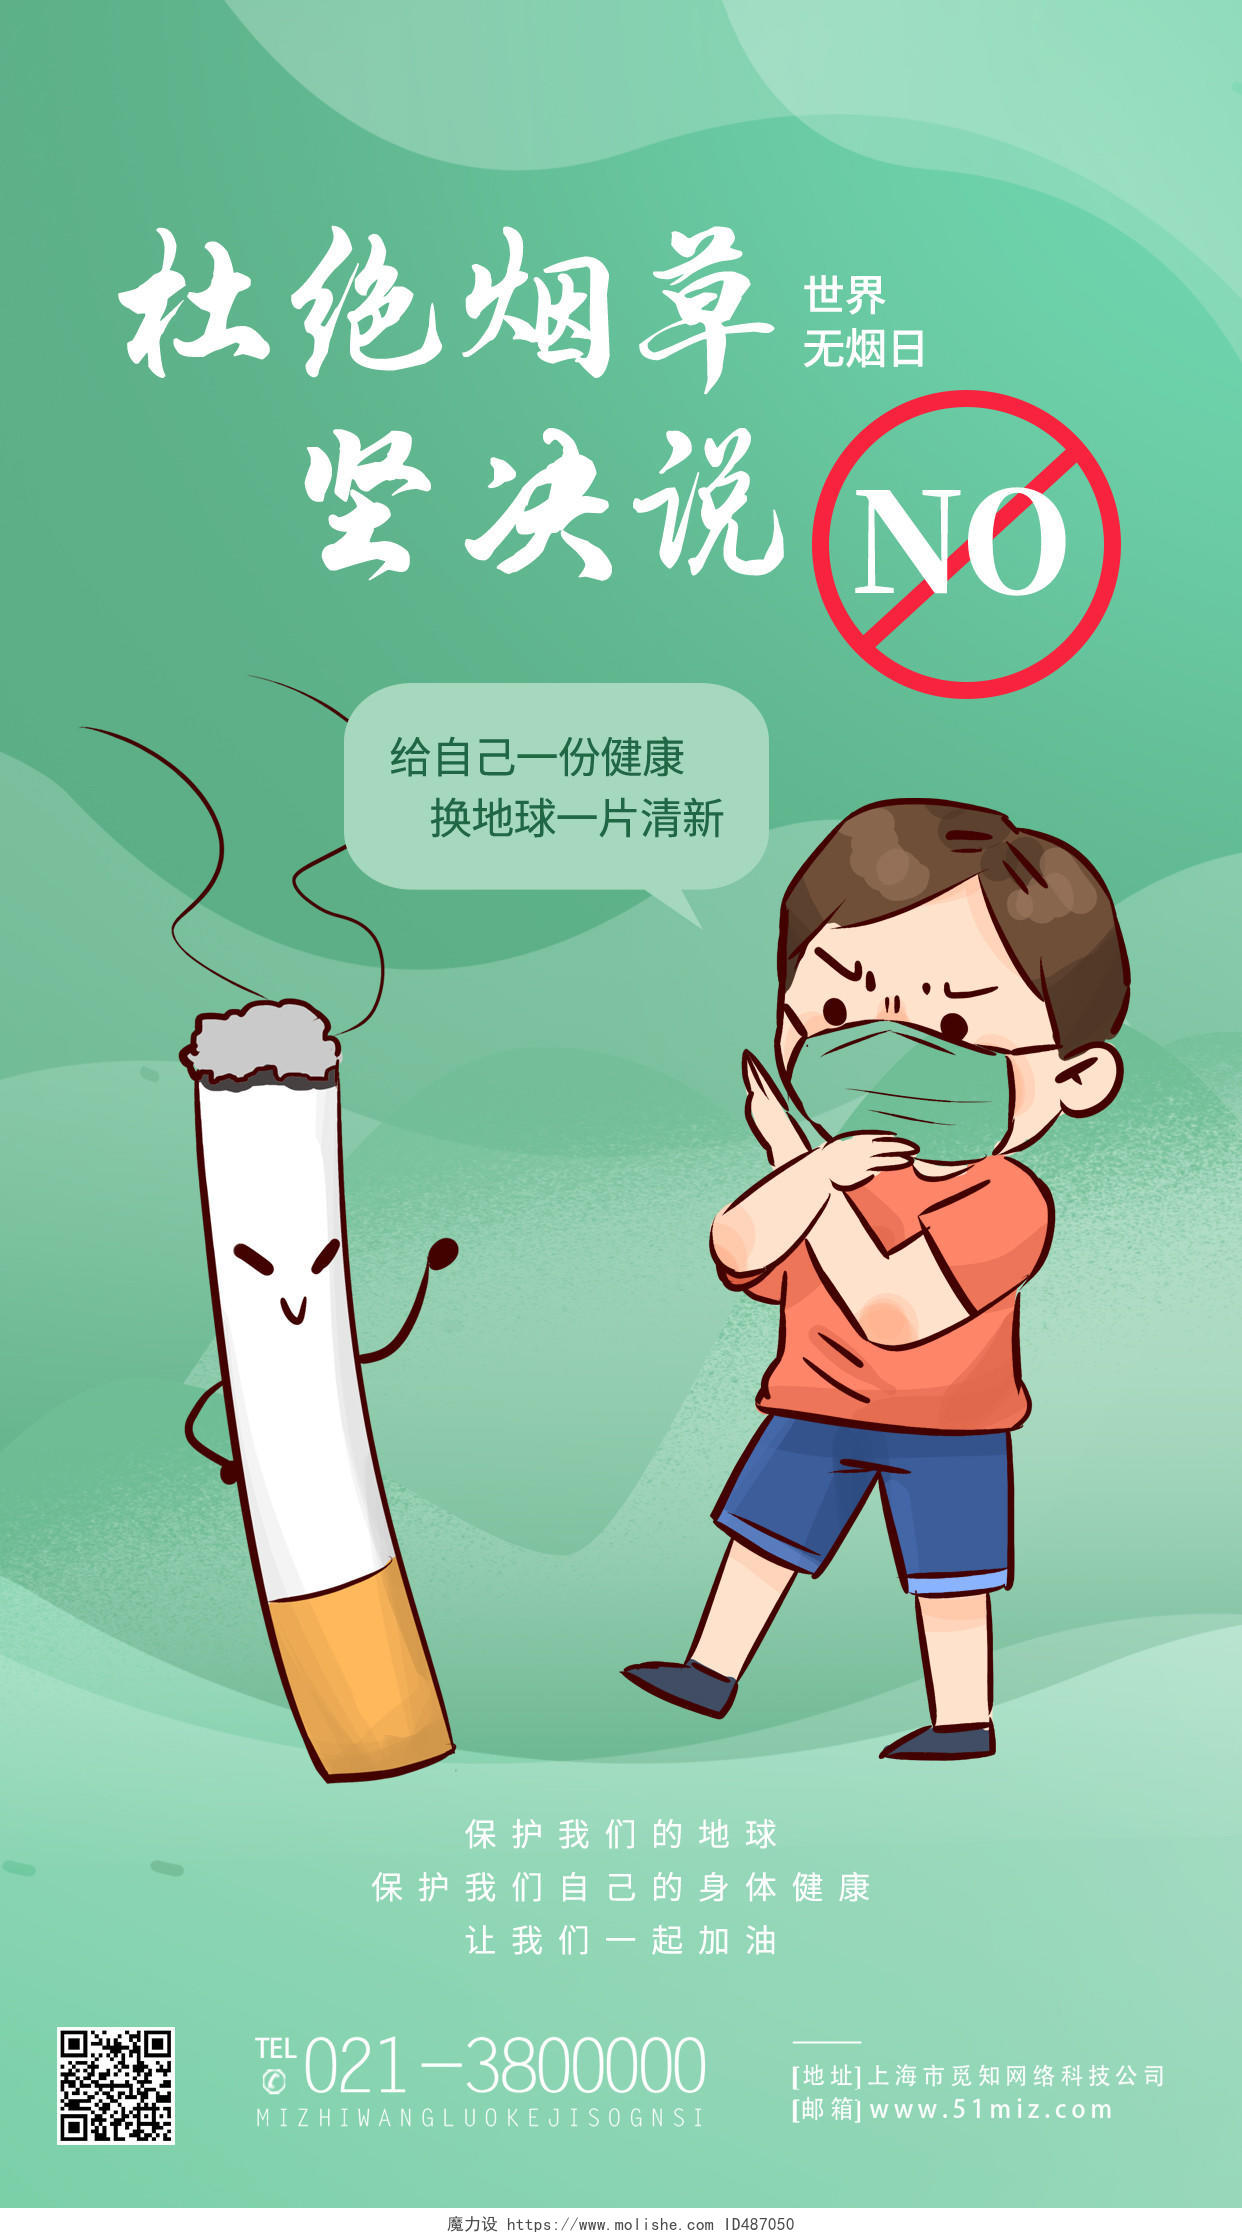 绿色卡通杜绝烟草坚决说不世界无烟日手机宣传海报节日